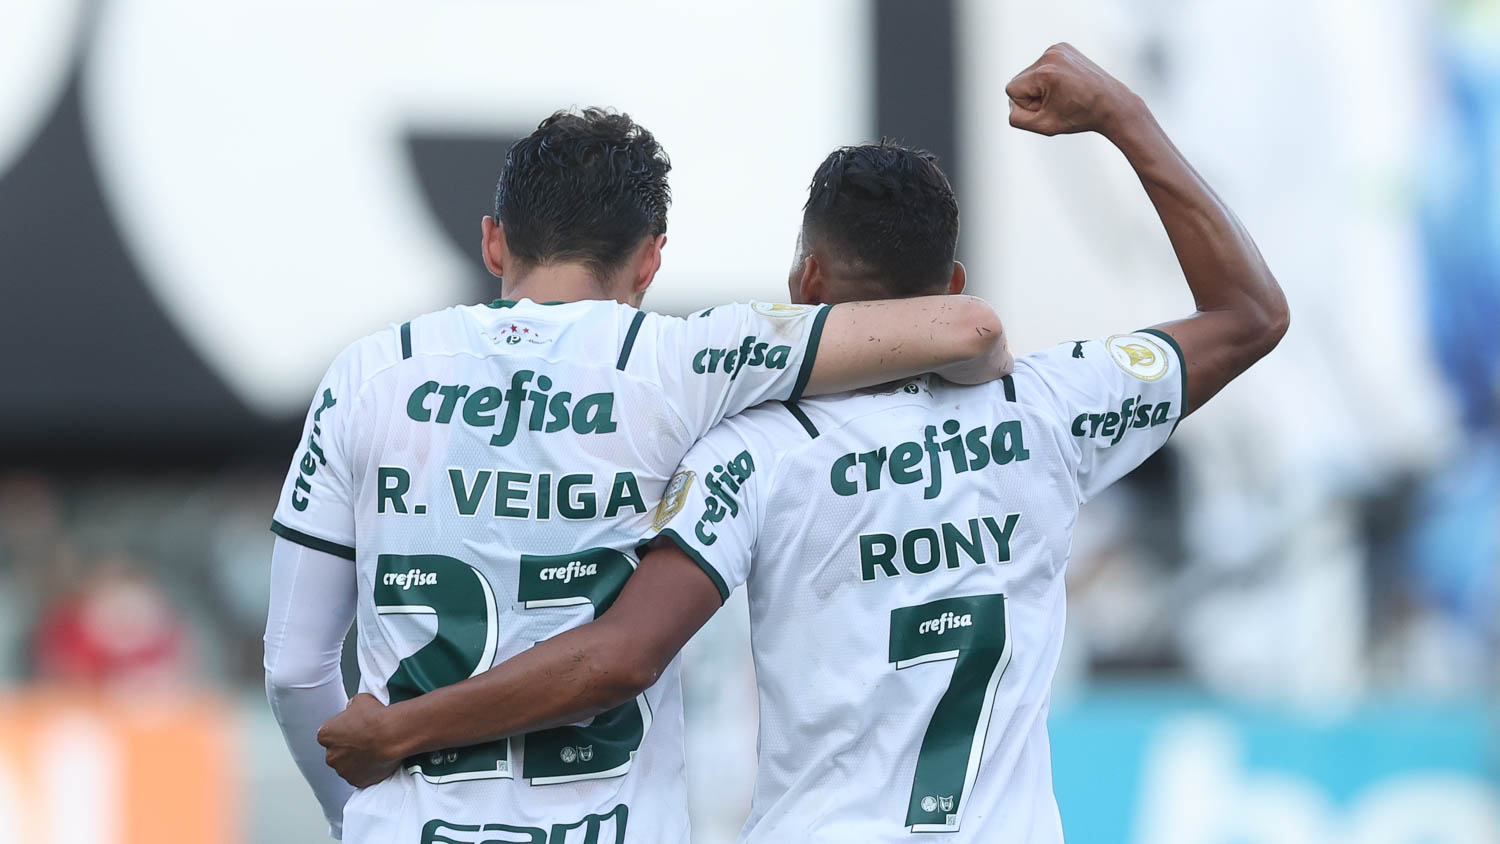 Raphel Veiga cruza e Rony marca bonito gol pela seleção brasileira